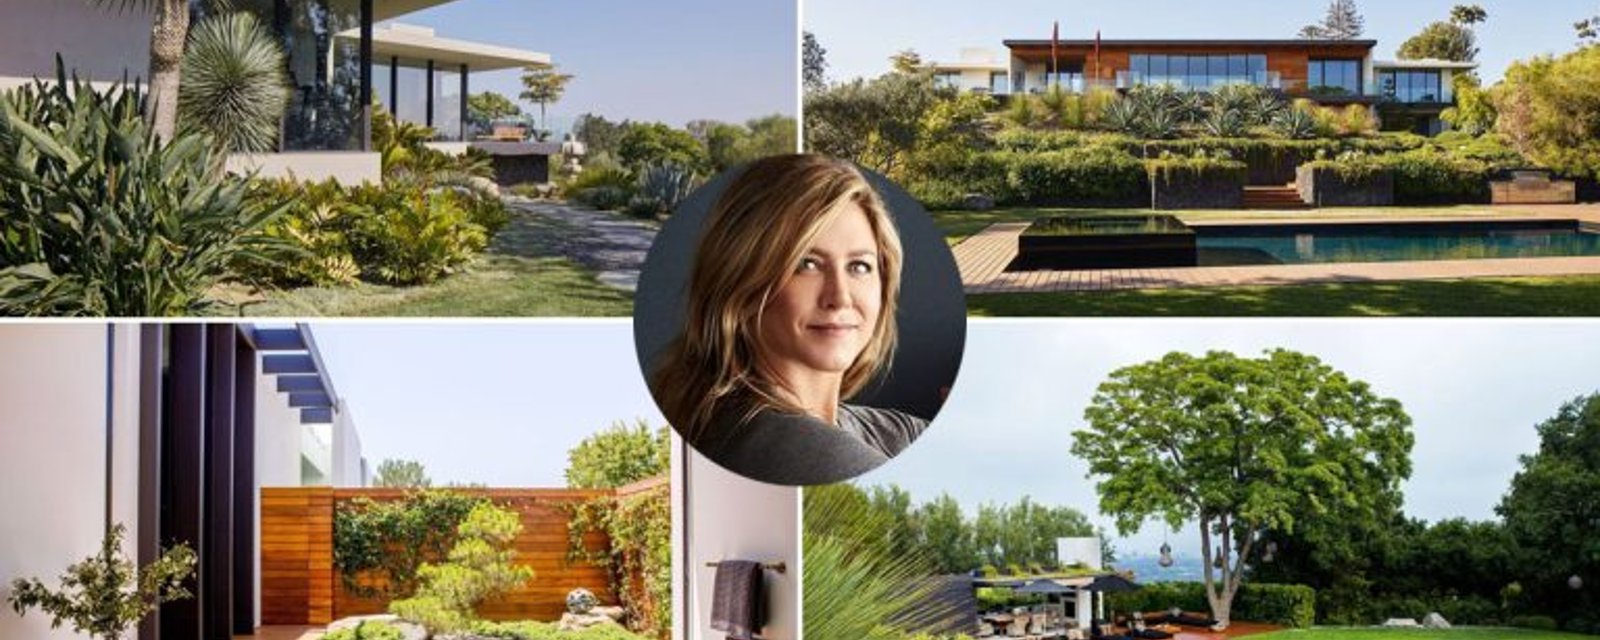 Découvrez l'intérieur de la ravissante maison mid-century de Jennifer Aniston